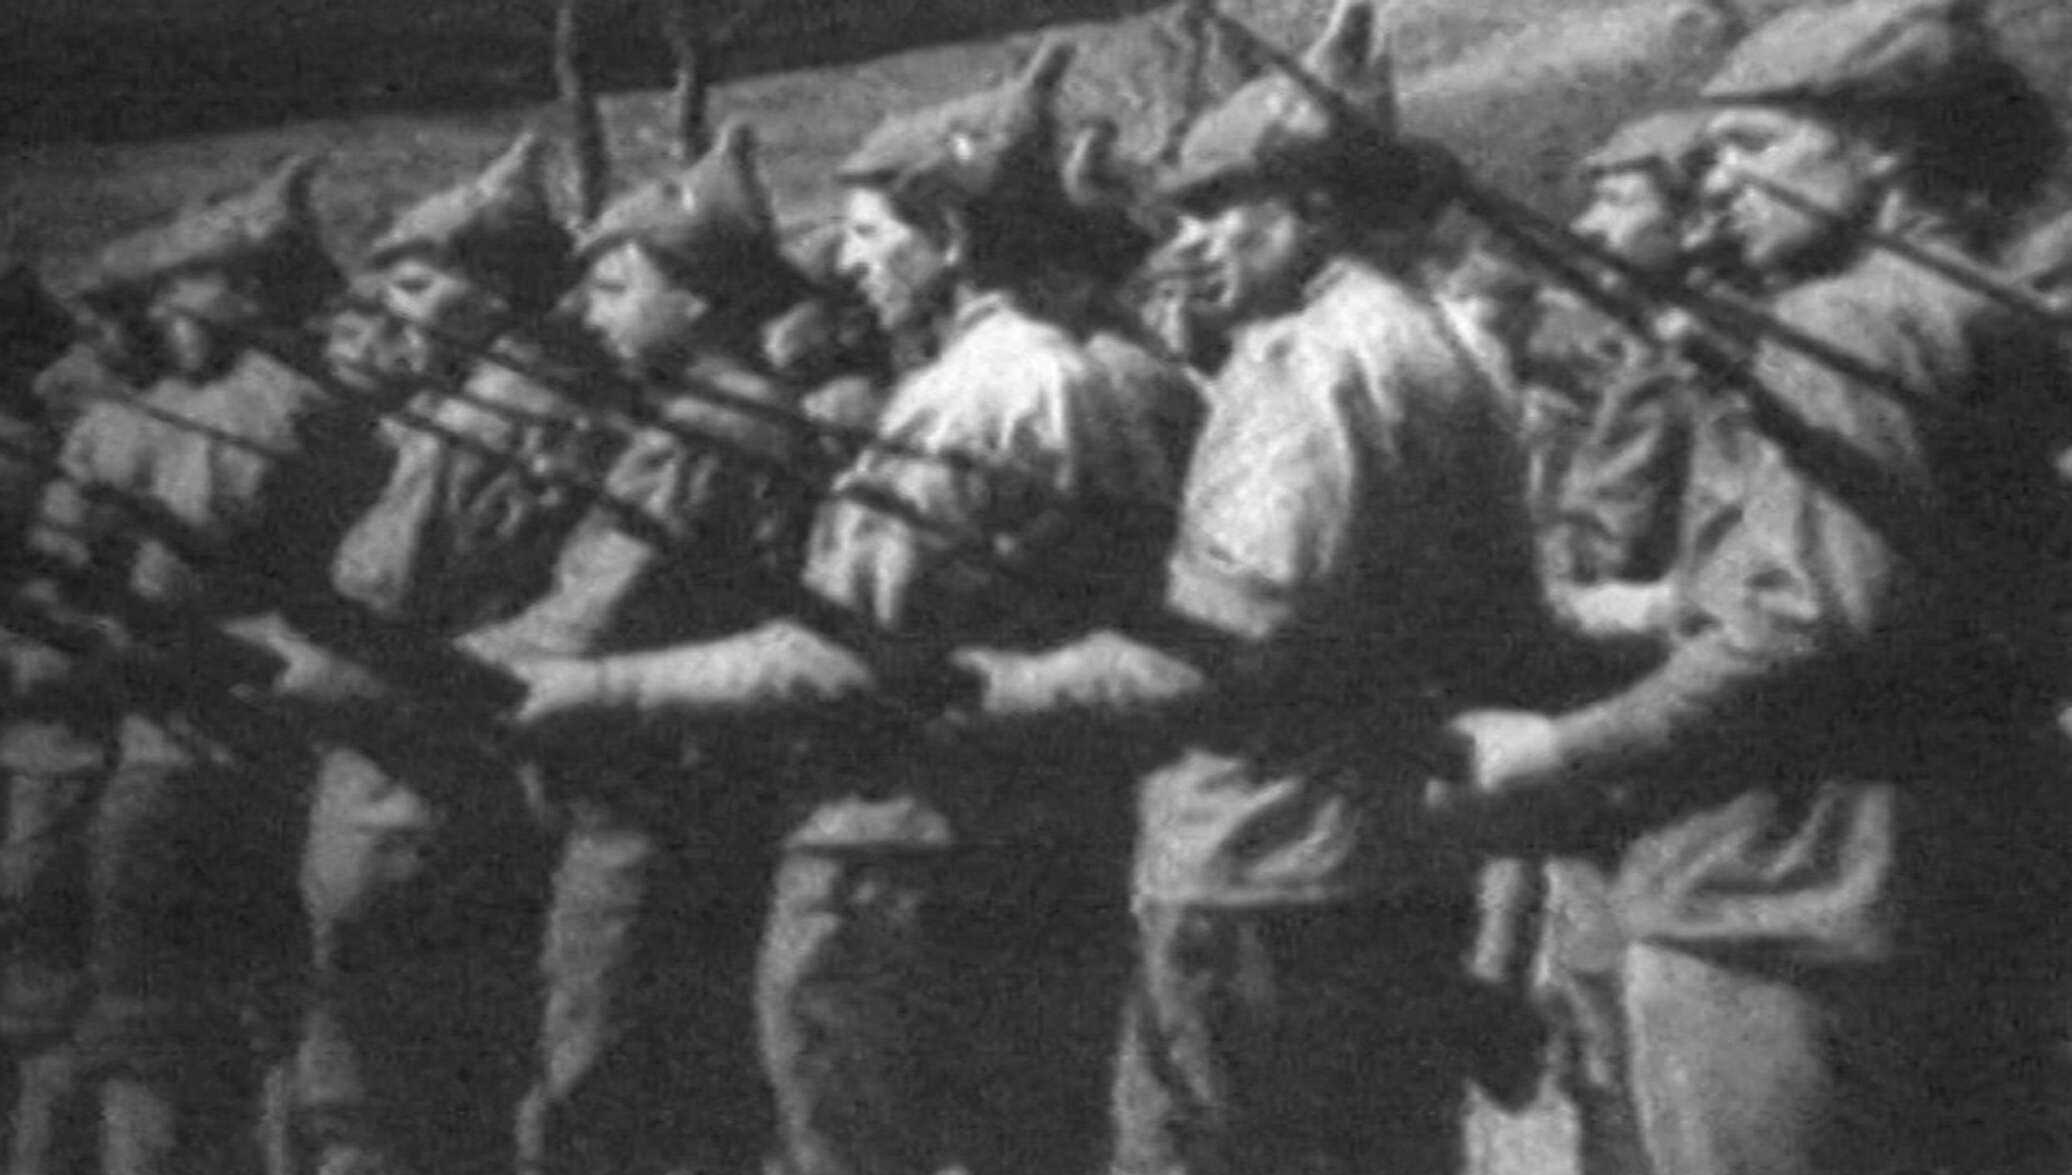 День победы красной армии над кайзеровскими войсками германии